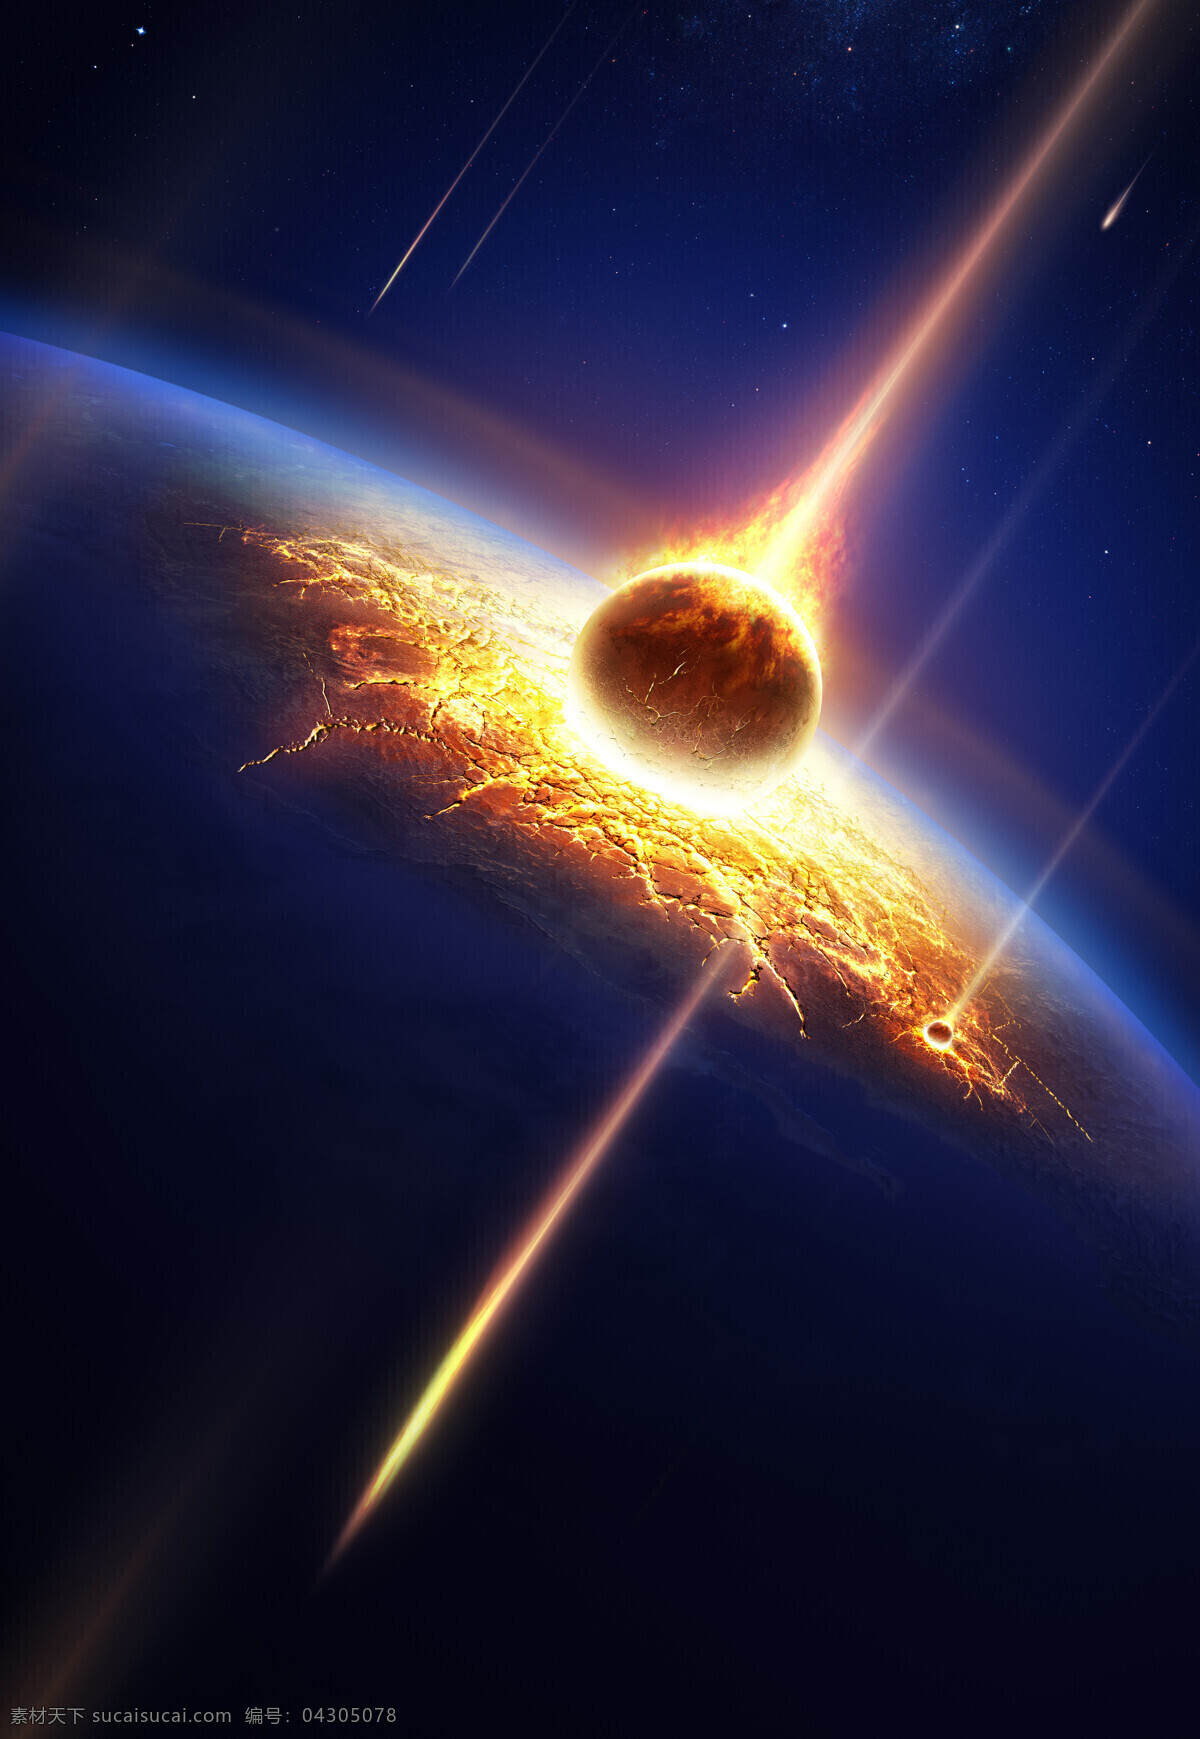 流星撞击地球 撞击地球 彗星 地球 太空 陨石 石头 流星 宇宙 冰水烈火 生活百科 黑色